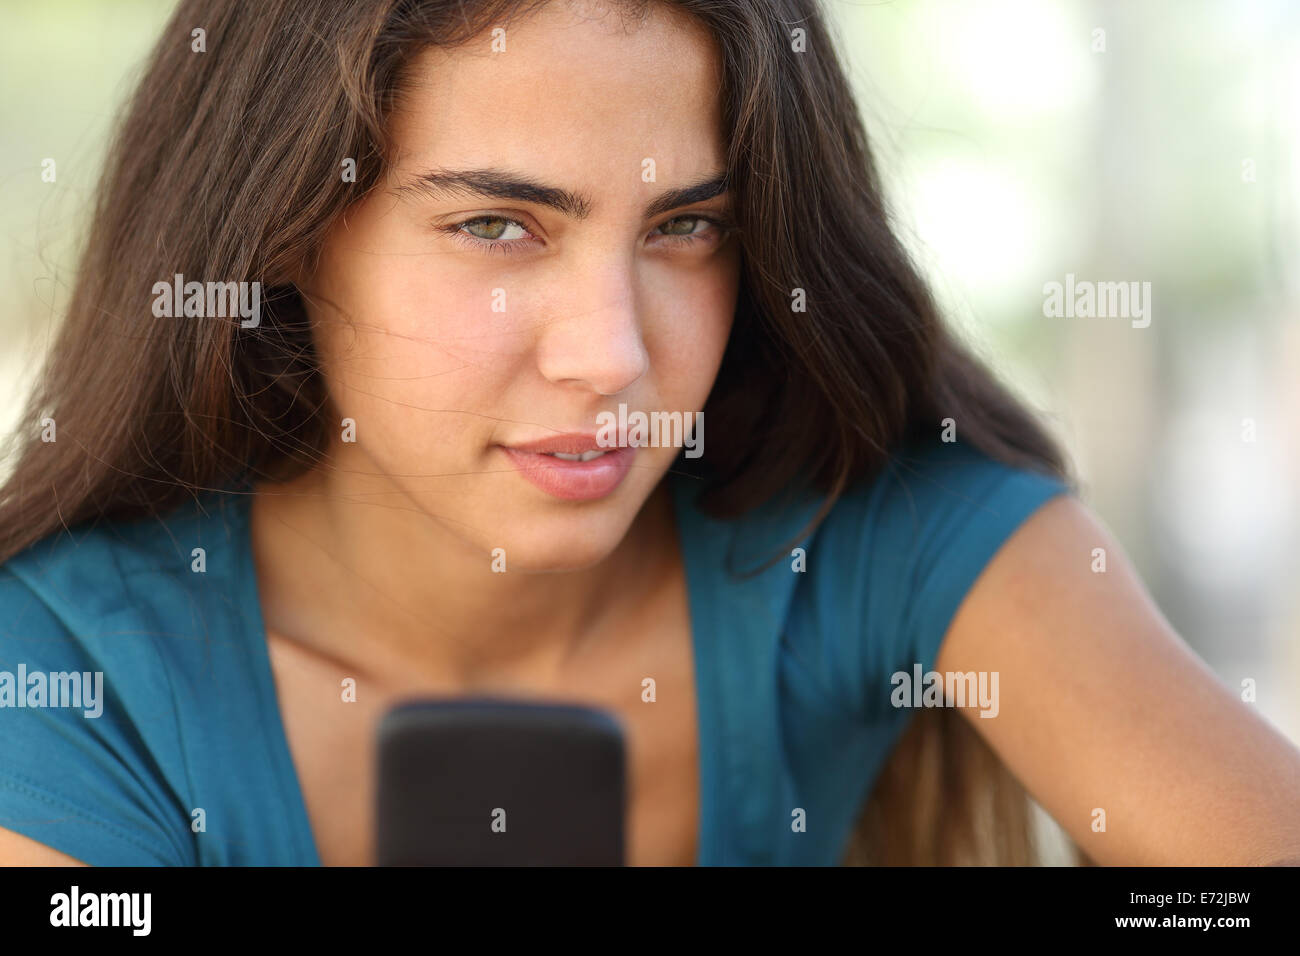 Retrato de una muchacha adolescente con un teléfono inteligente mirando a la cámara Foto de stock